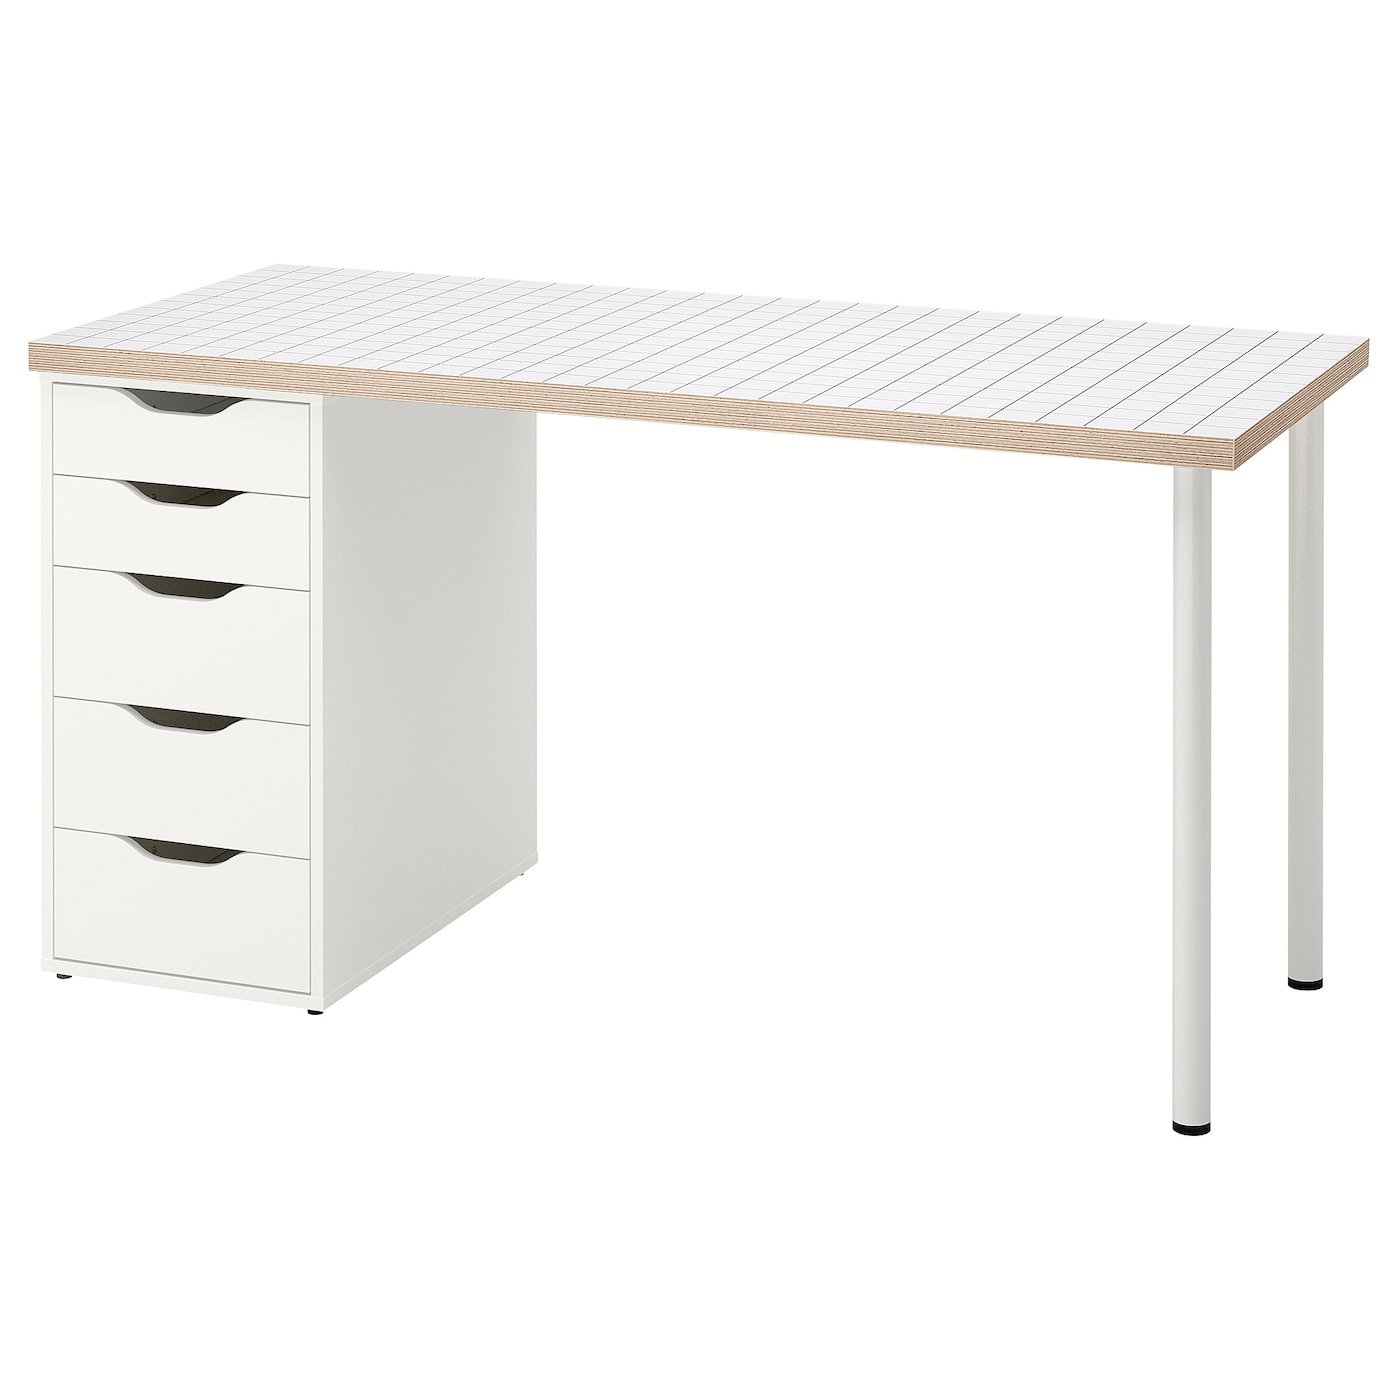 Письменный стол с ящиками - IKEA LAGKAPTEN/ALEX/ЛАГКАПТЕН/АЛЕКС ИКЕА, 120х60 см, антрацит/белый